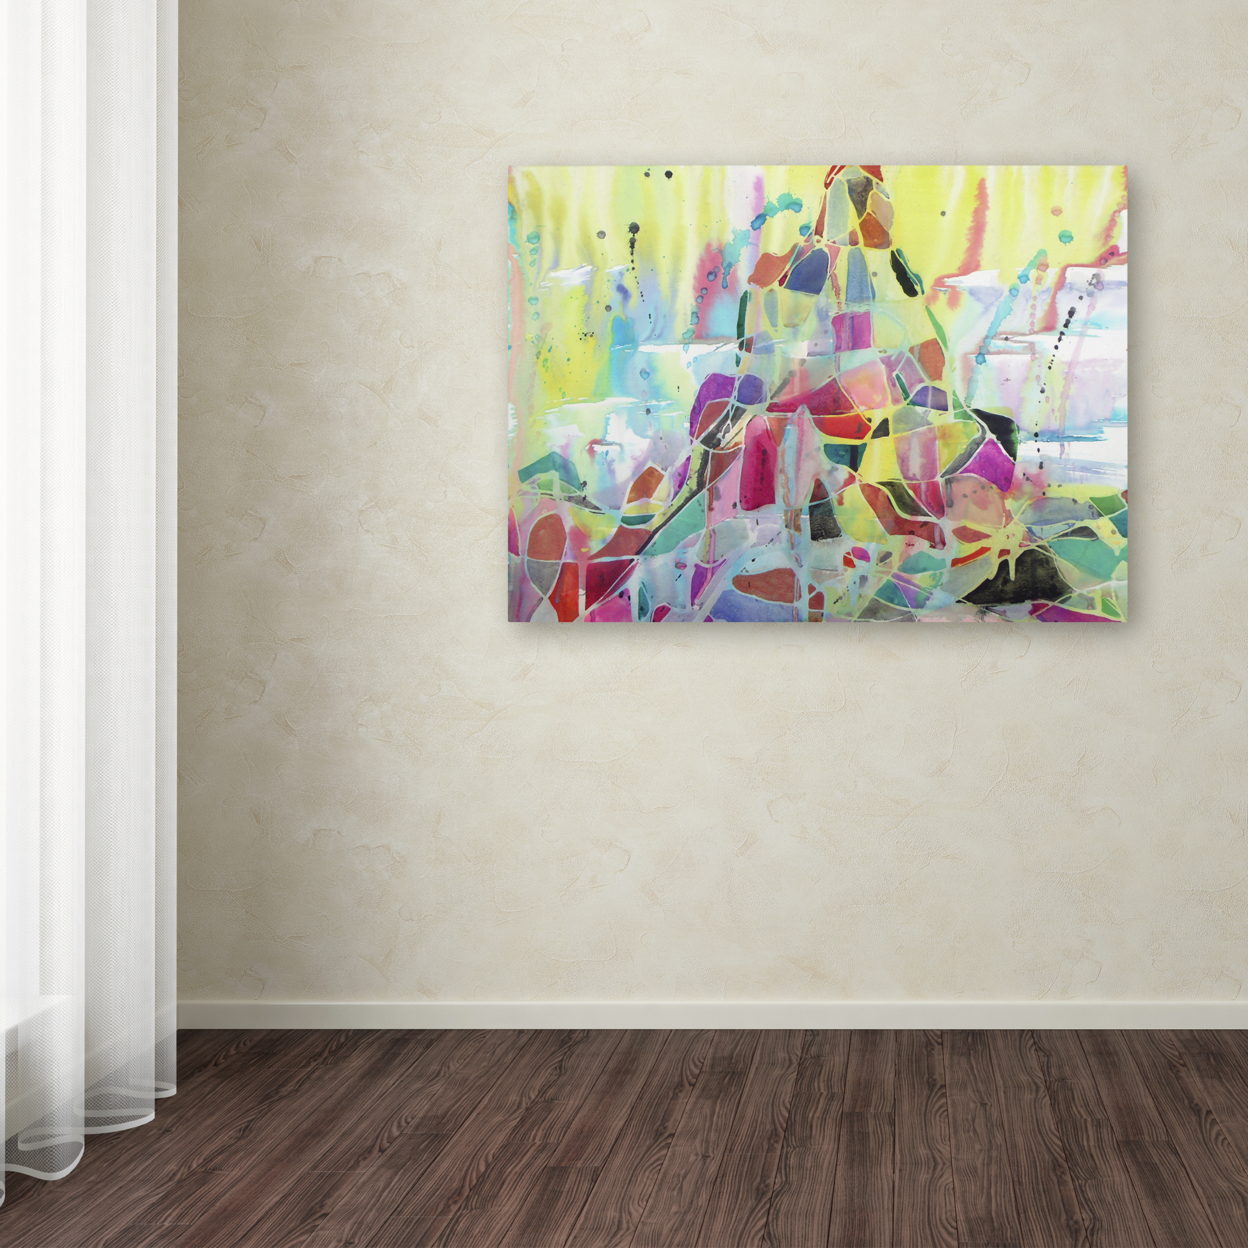 Lauren Moss 'Eiger' Canvas Wall Art 35 X 47 Inches